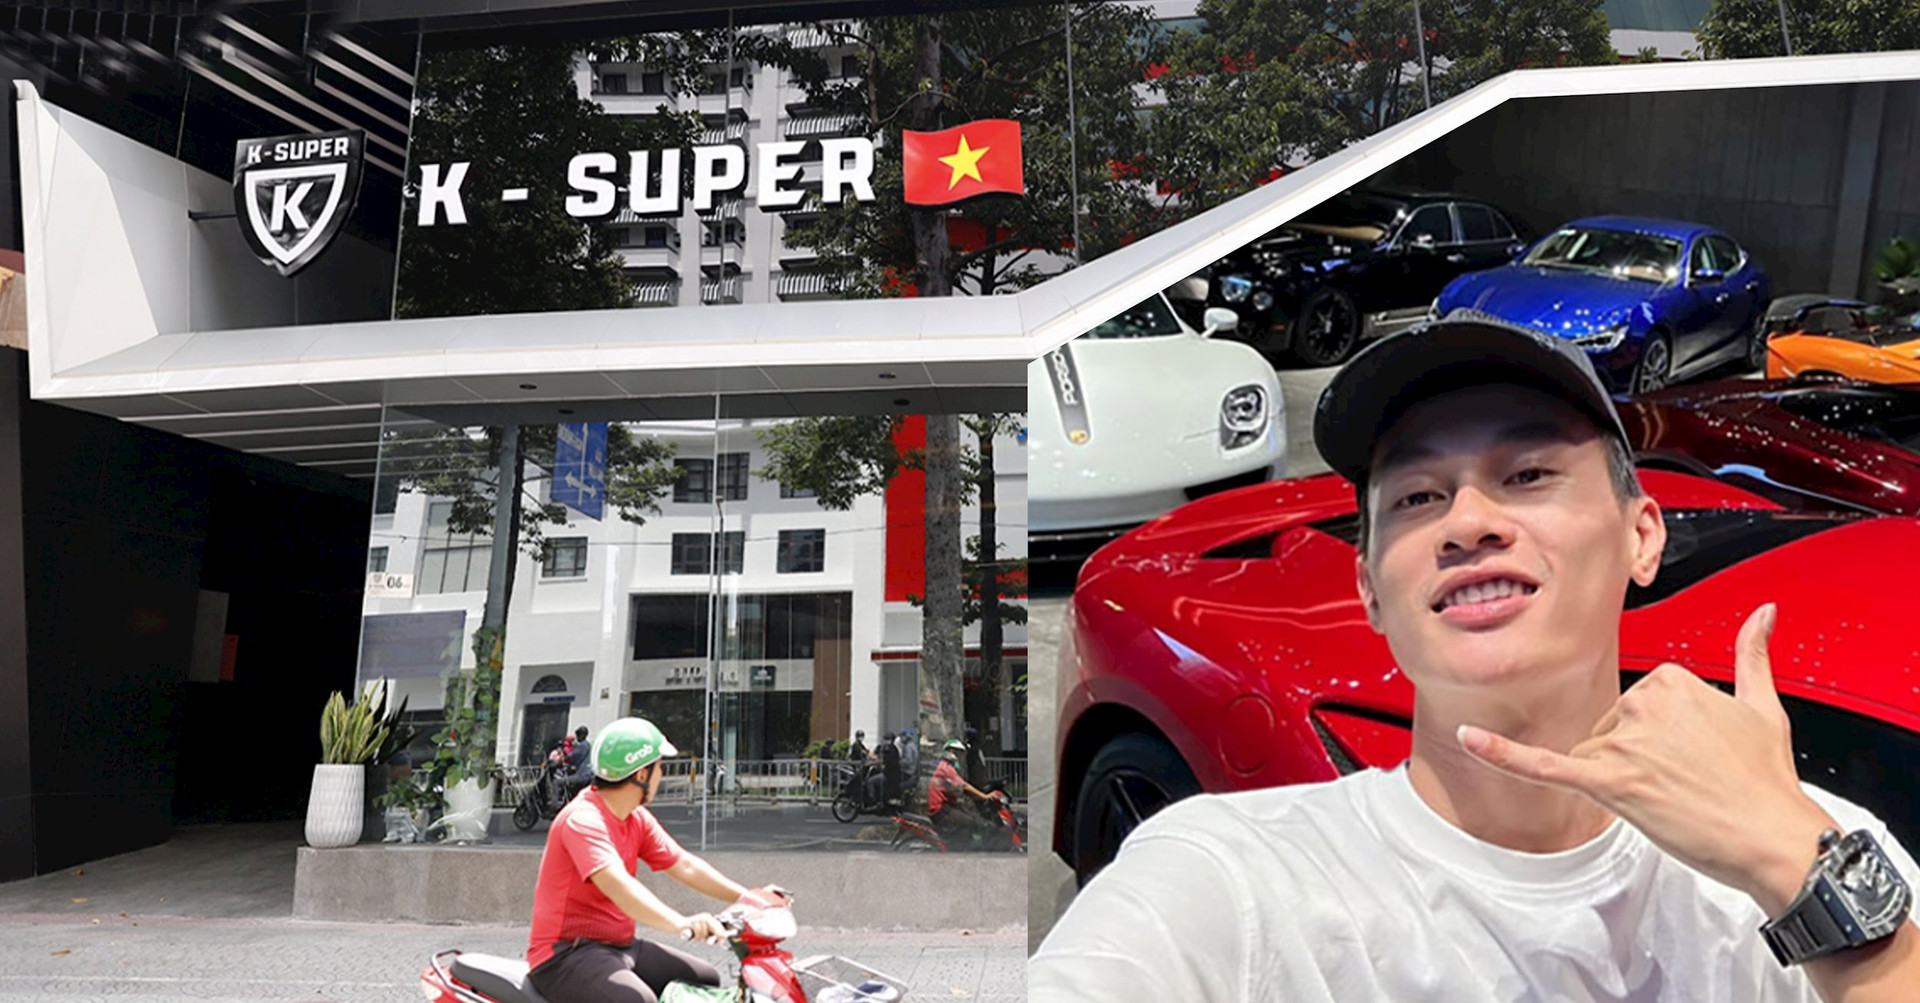 Mới khai trương hồi đầu tháng 6, showroom K-Super của Phan Công Khanh  ngay quận 1 (Tp.HCM) đang rao thuê với giá ngất ngưởng - Ảnh 1.